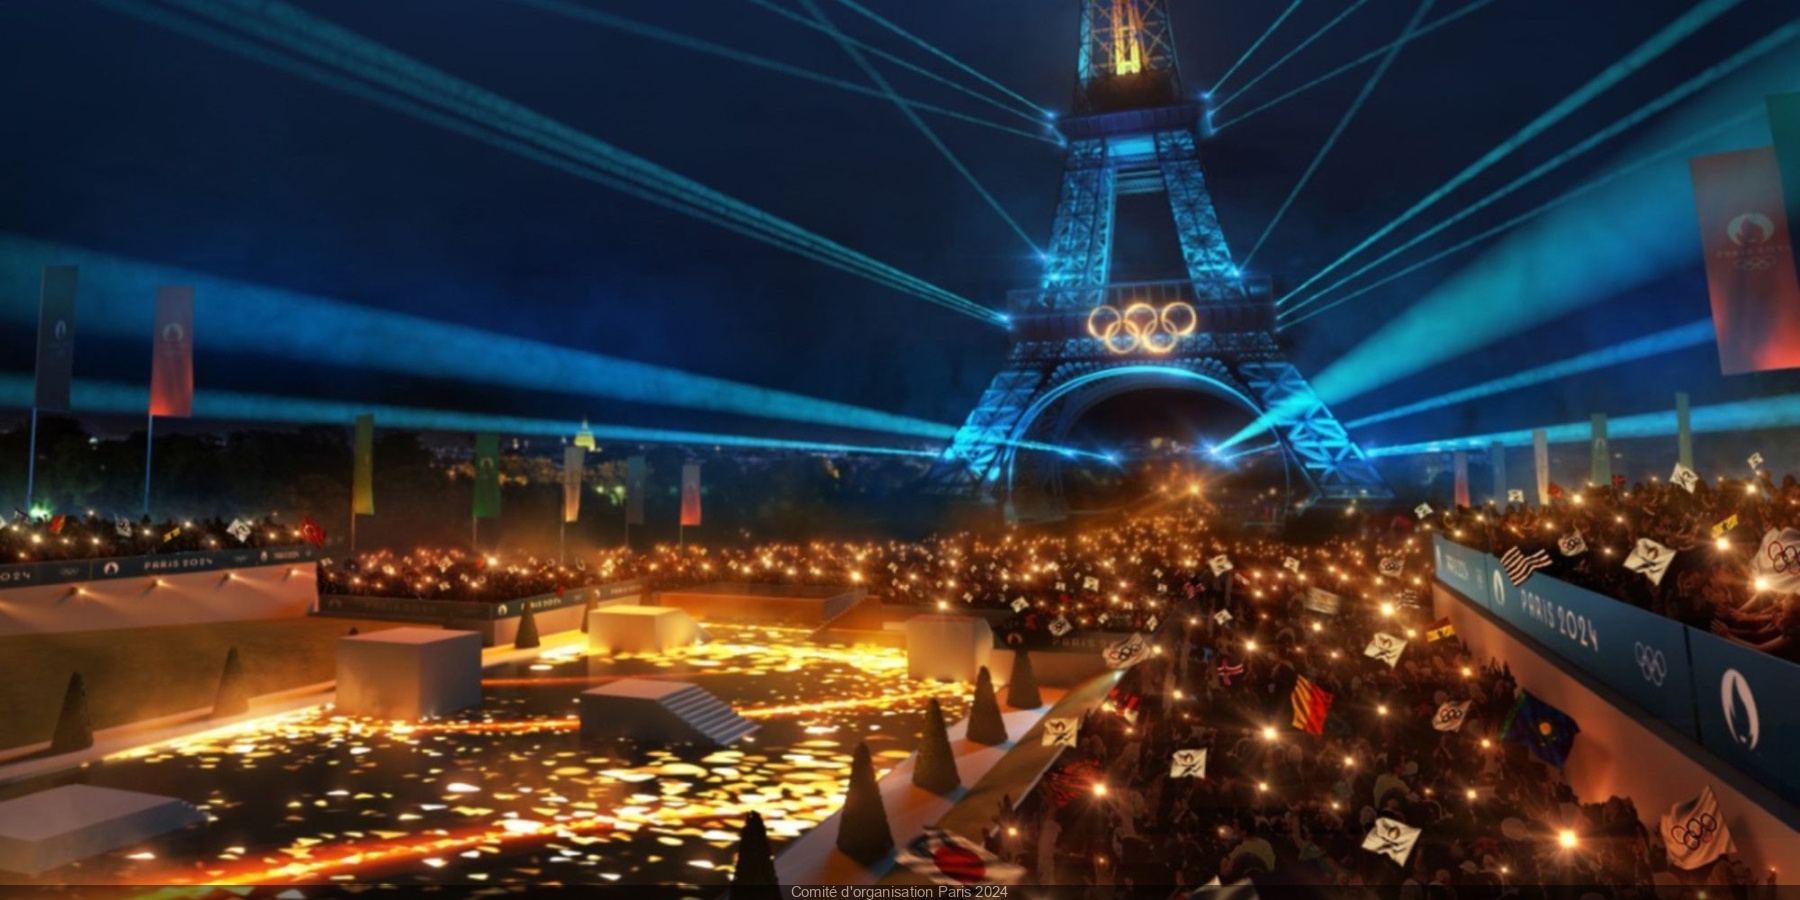 Paris 2024 bientôt des "olympistes", des pistes cyclables pour relier